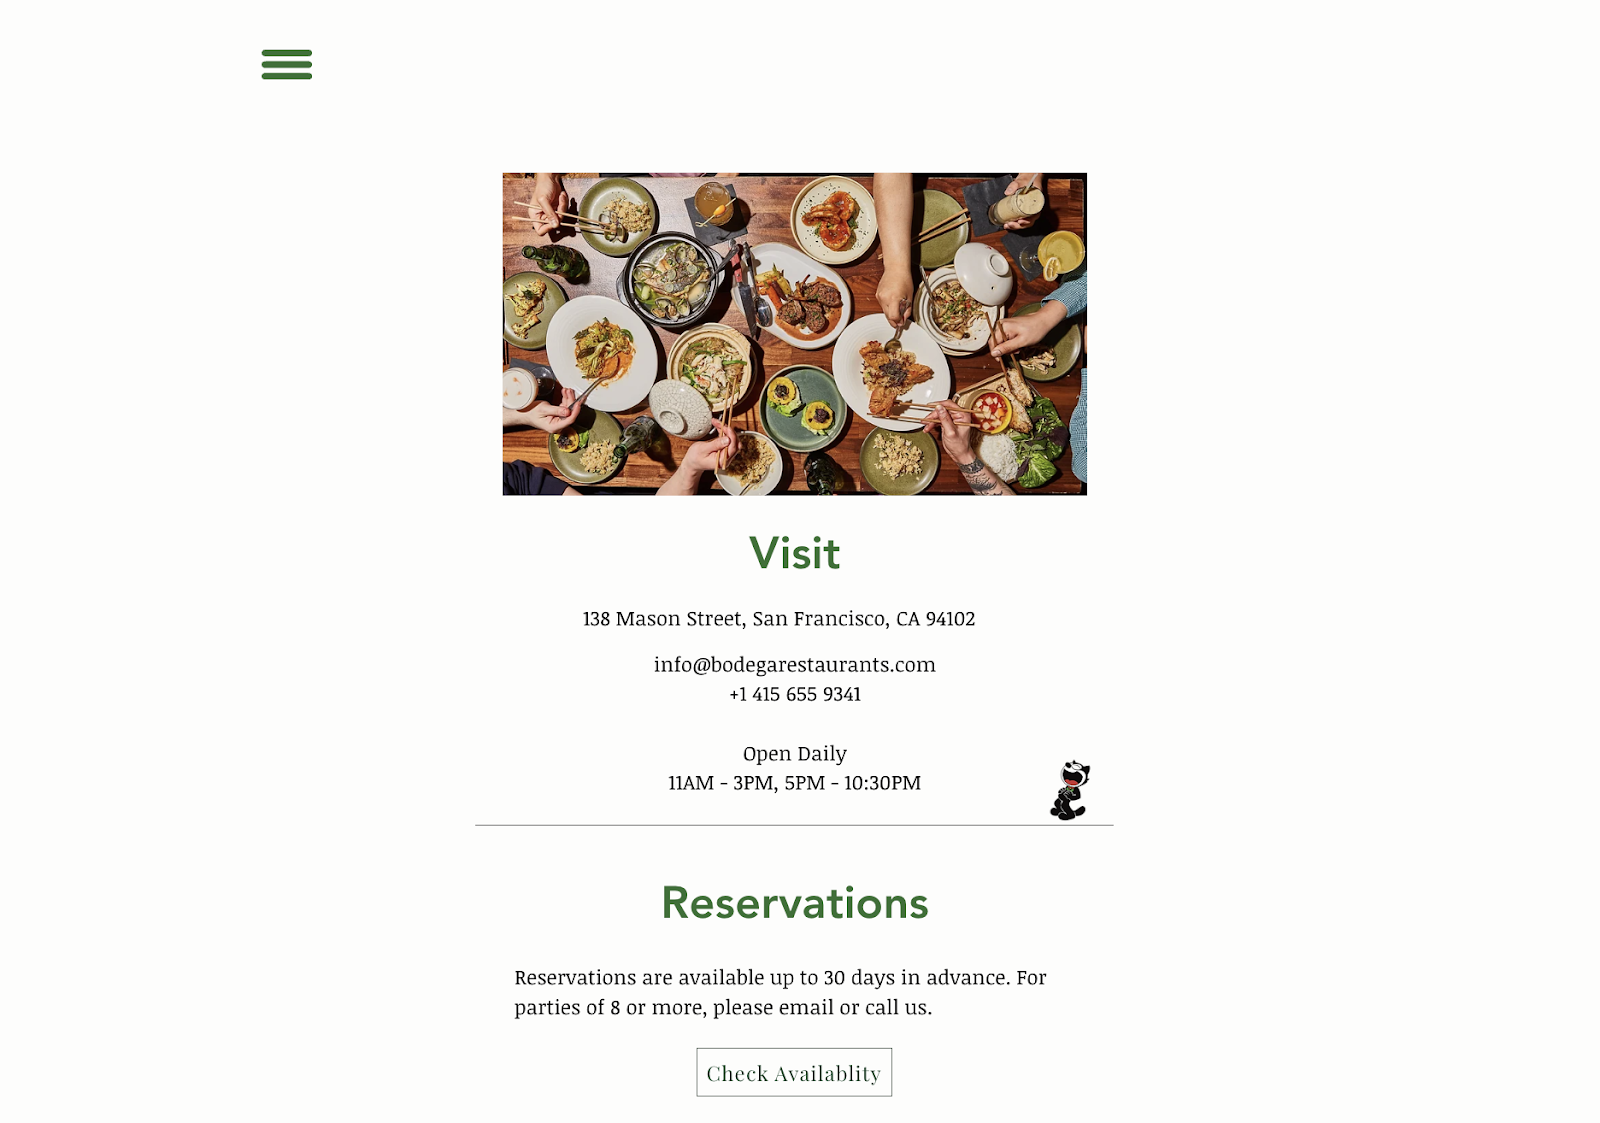 레스토랑 마케팅 아이디어: 샌프란시스코에 있는 Bodega 레스토랑을 위한 간단한 웹사이트입니다. 웹페이지에는 연락처 정보, 영업 시간, 예약 링크가 포함되어 있습니다.